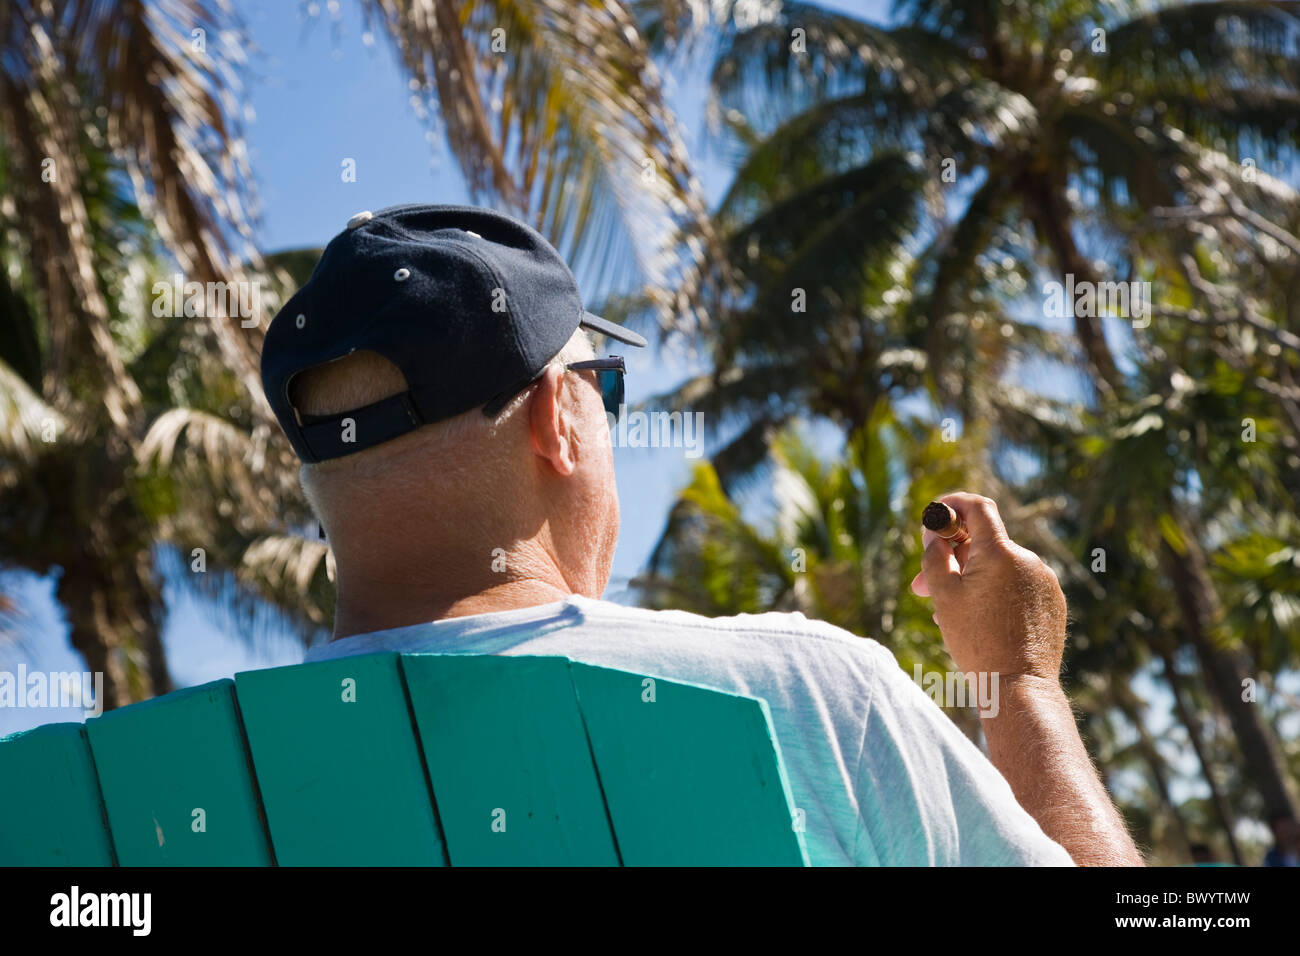 Man fumer un cigare assis sur une chaise à l'extérieur, Miami Beach, Florida, USA Banque D'Images